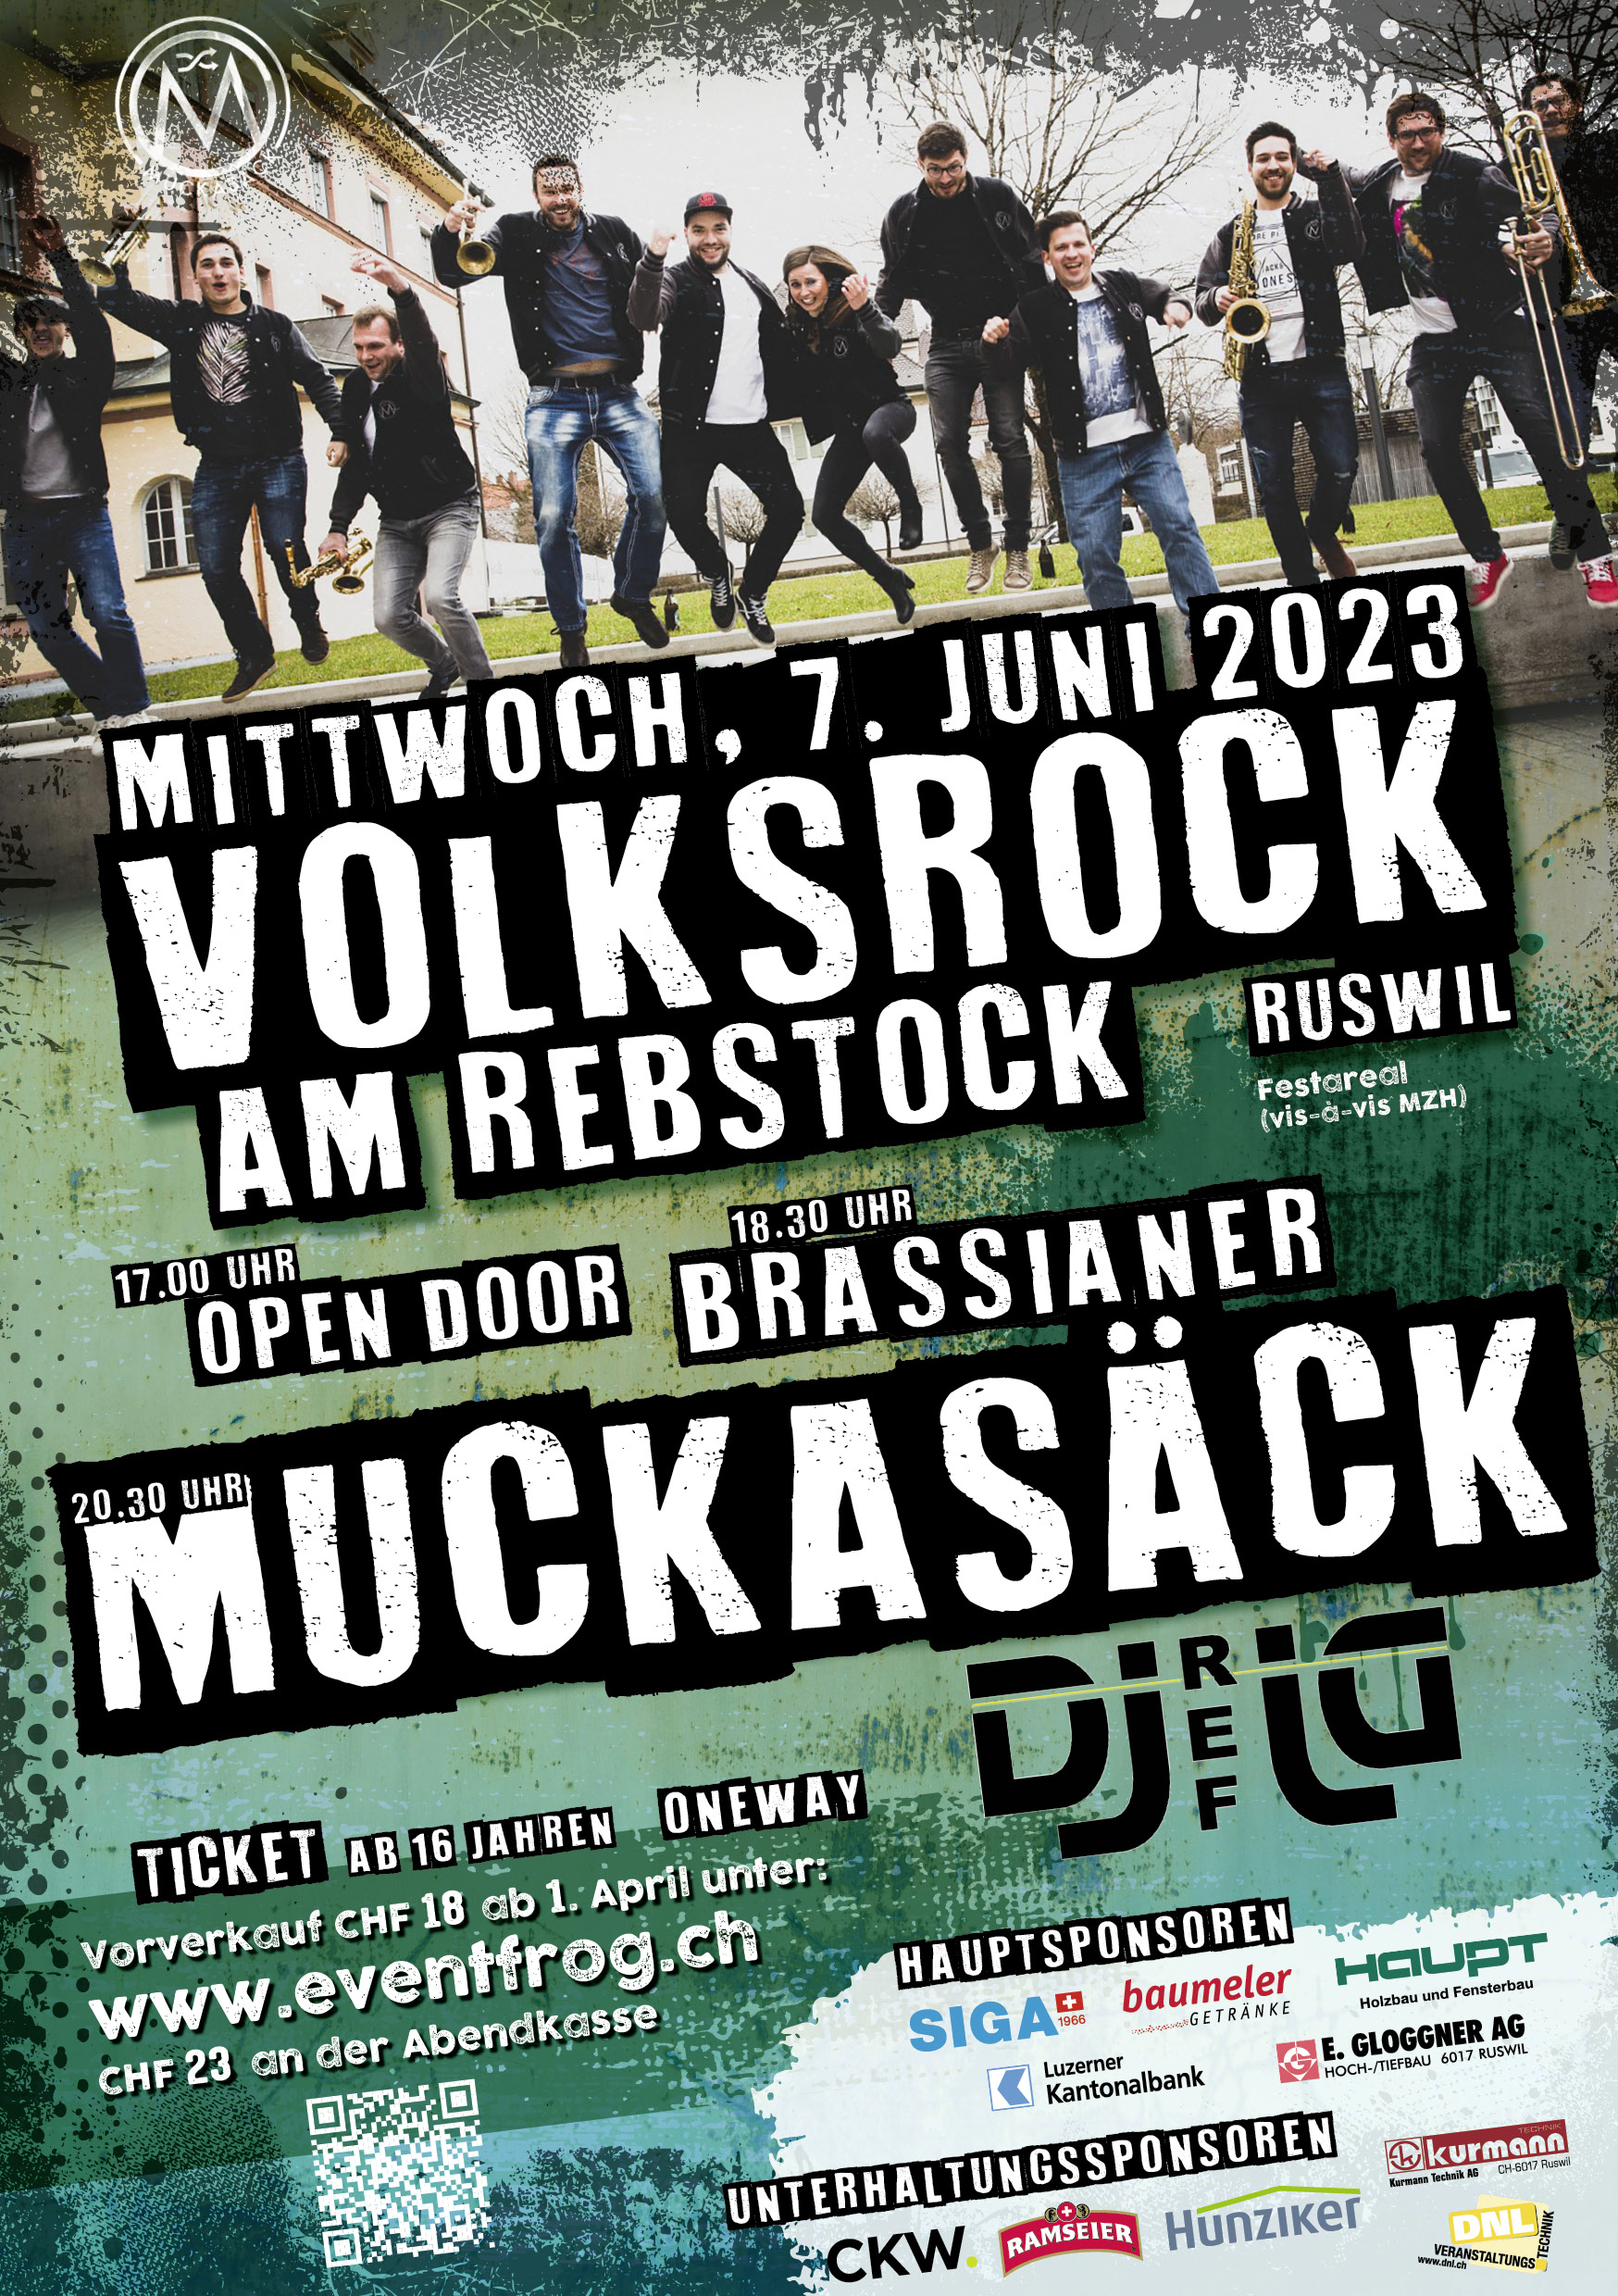 Party Volksrock am Rebstock im Festprogramm des Musiktag Ruswil 2023 ist ein Teil des Festprogramms